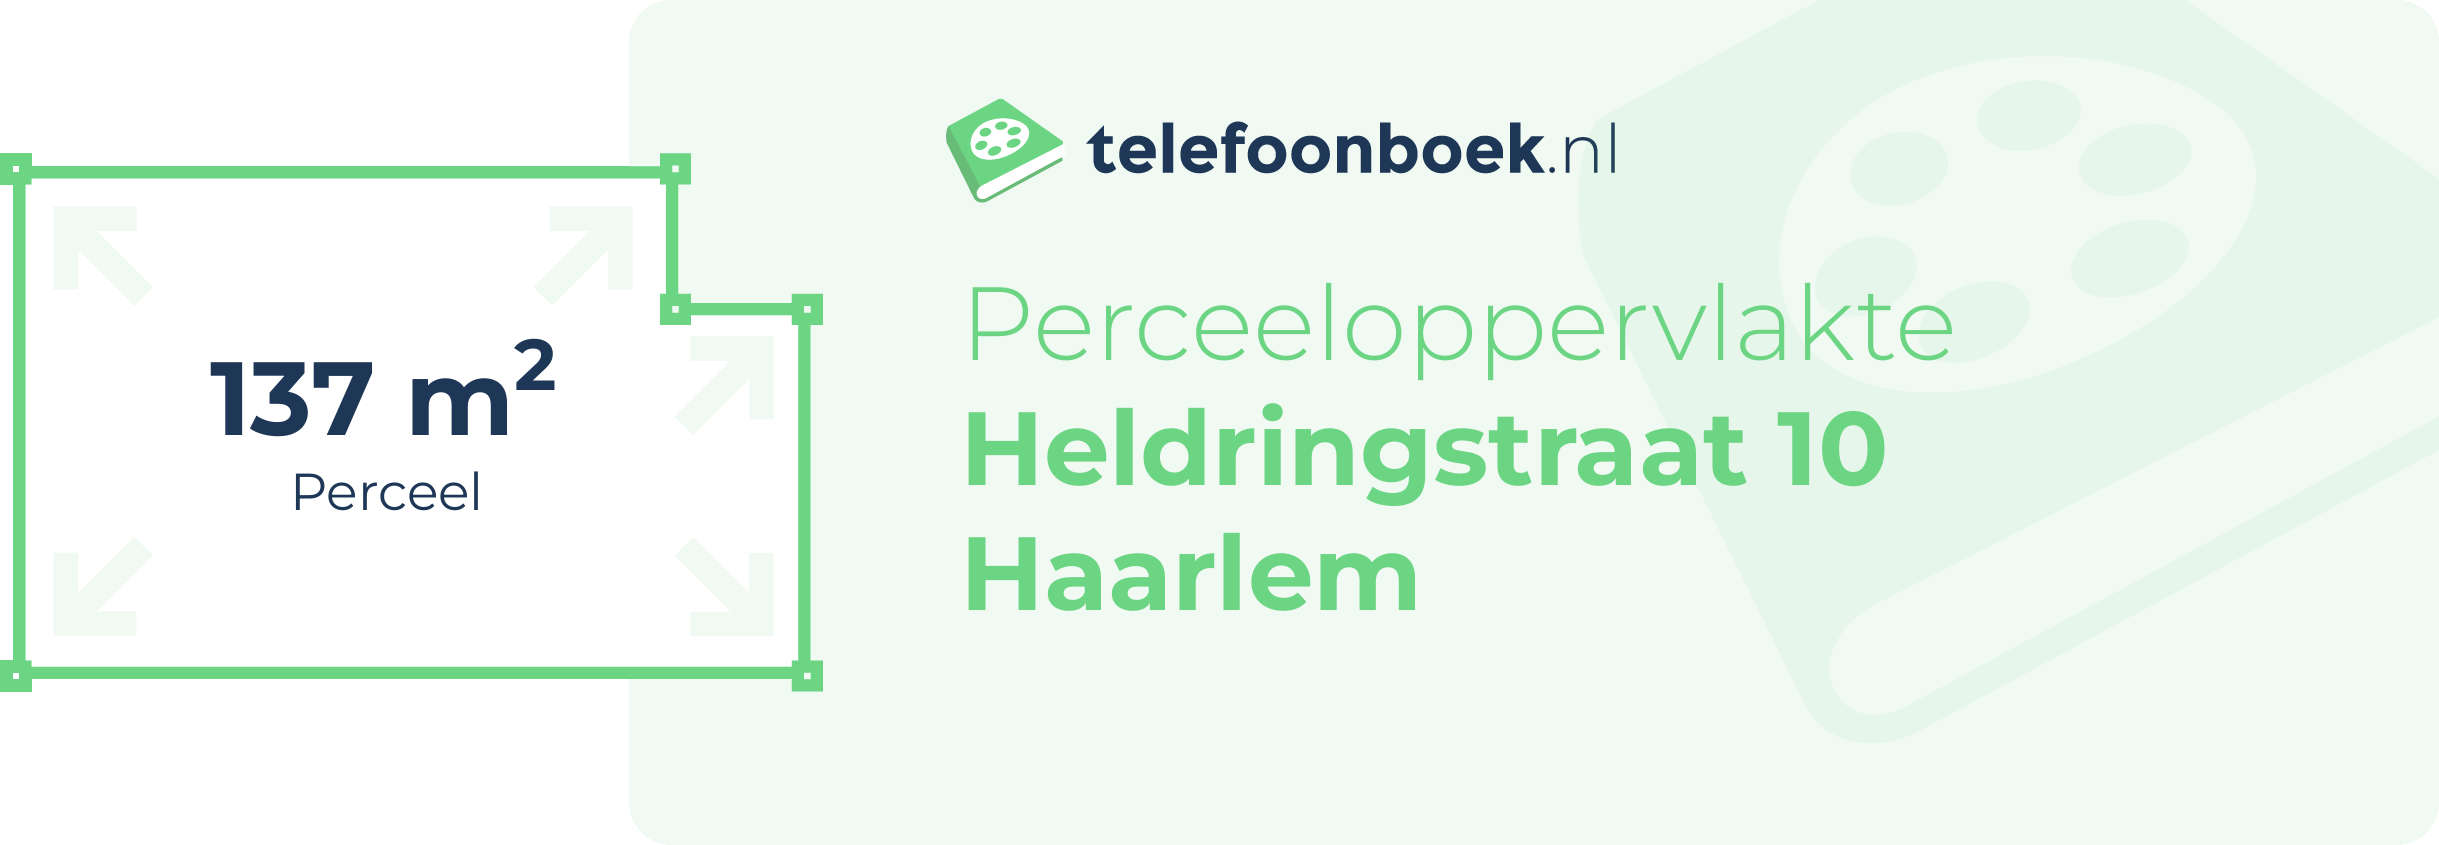 Perceeloppervlakte Heldringstraat 10 Haarlem